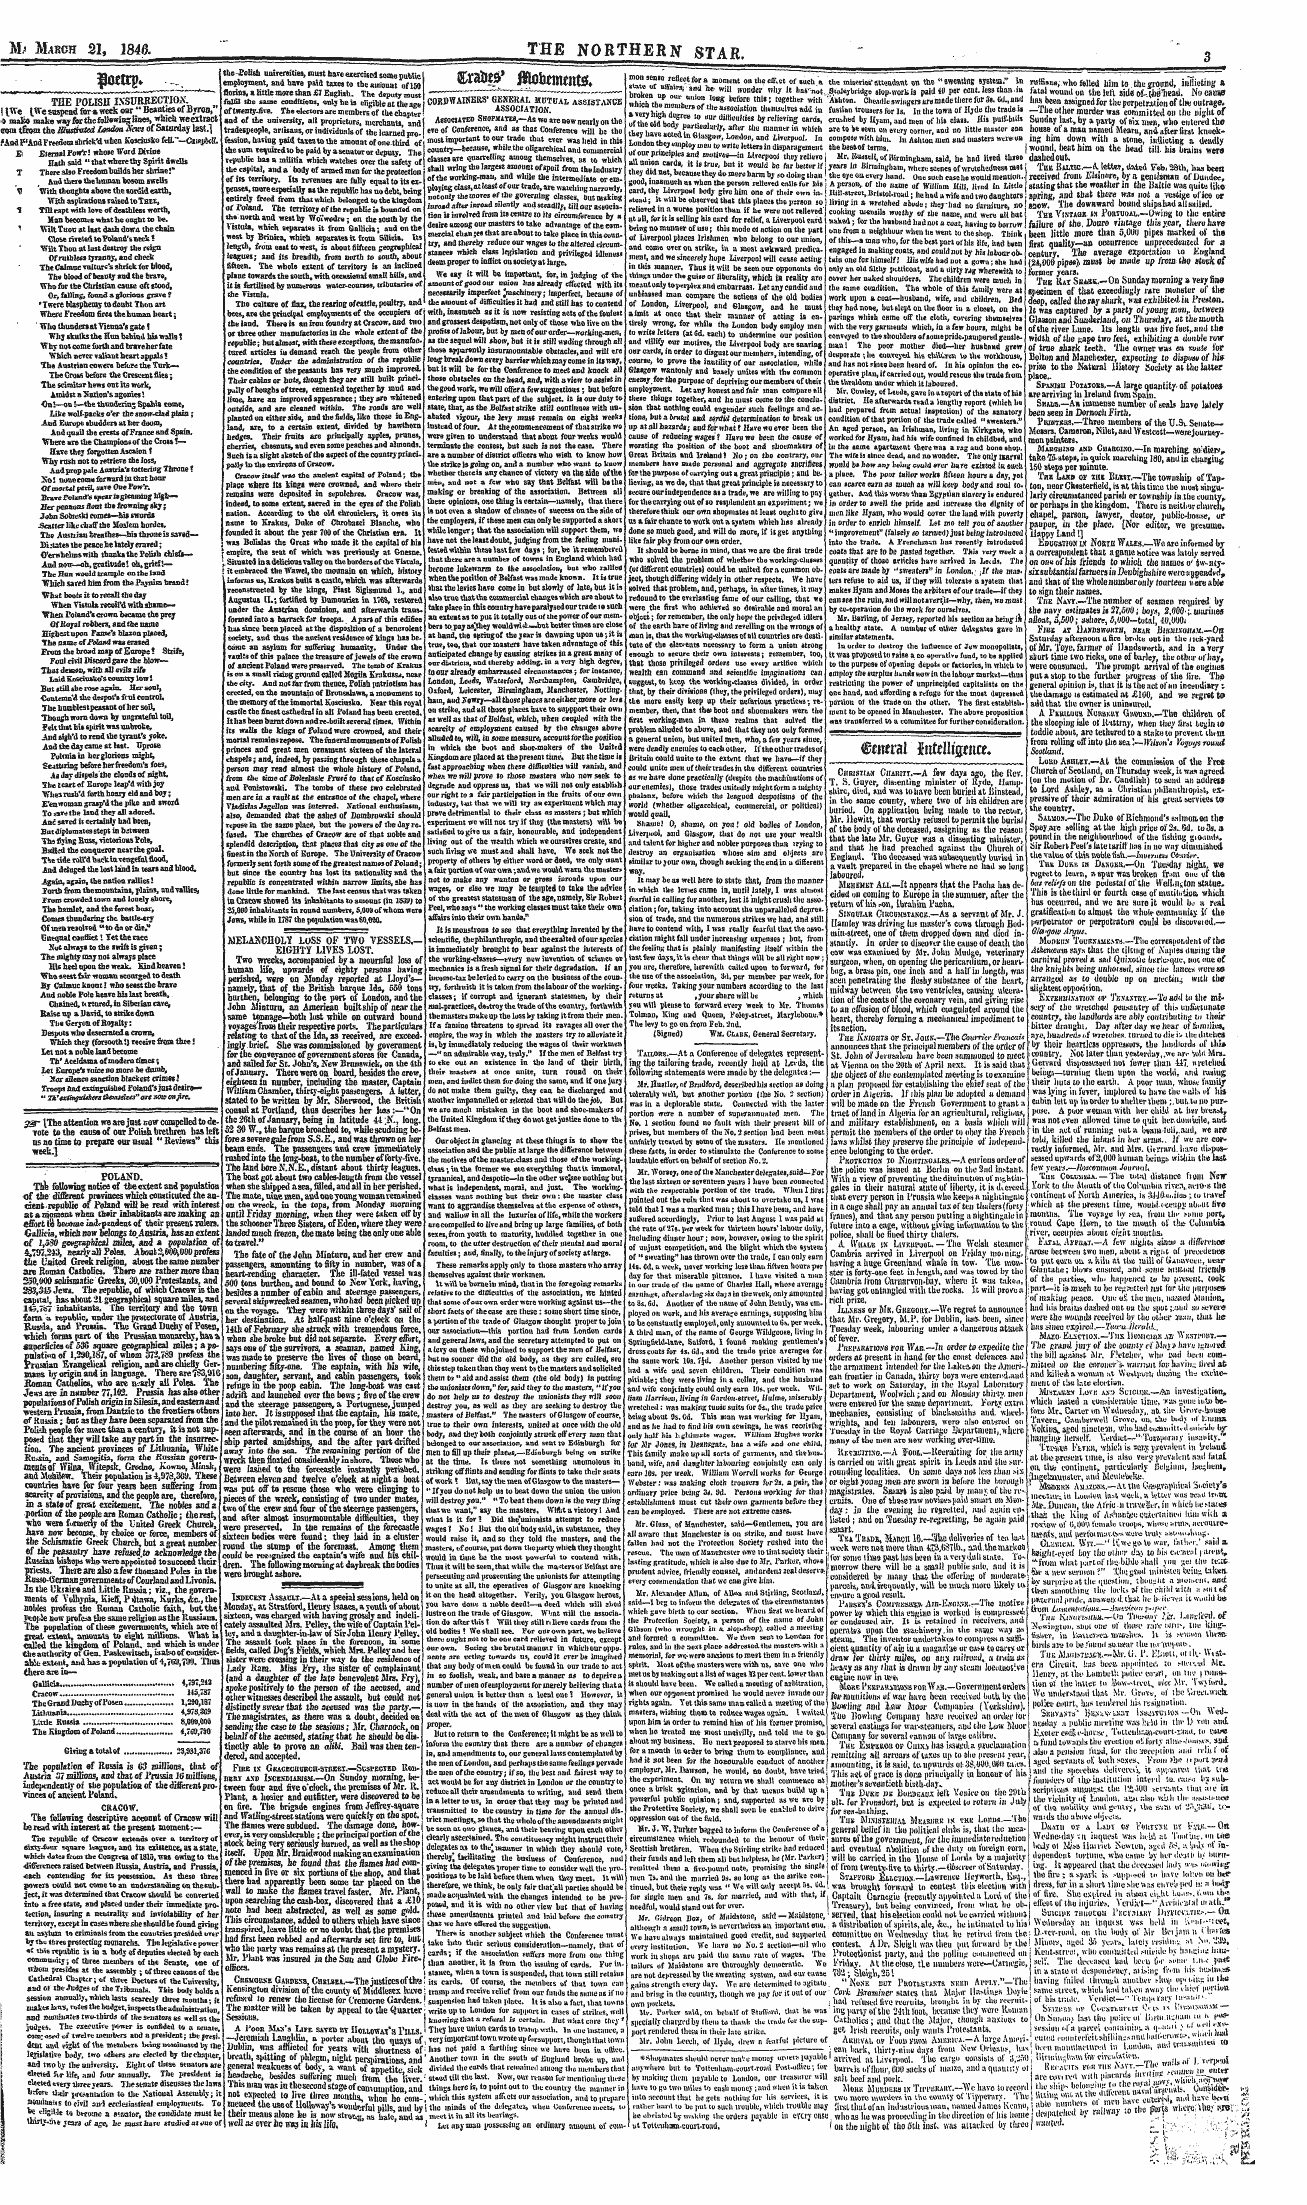 Northern Star (1837-1852): jS F Y, 2nd edition - Tixmtir Aofafmtnt&